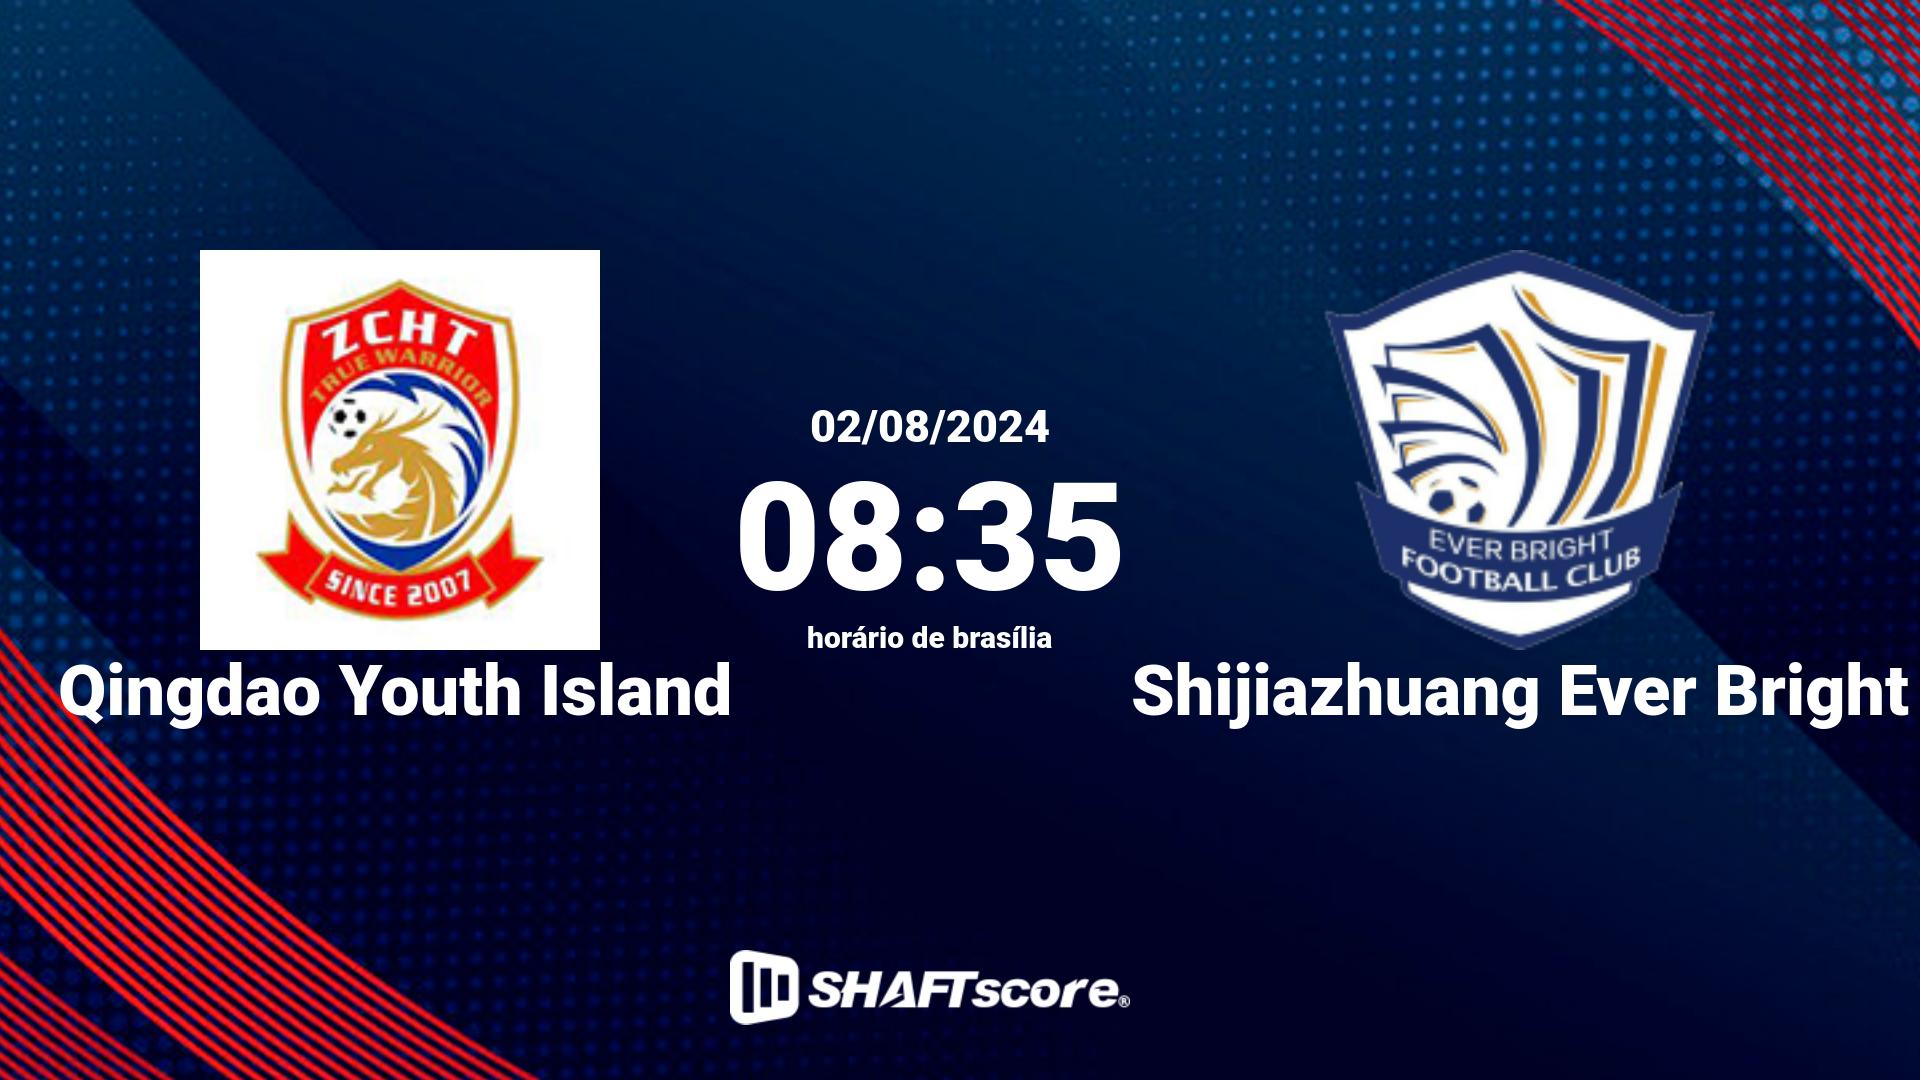 Estatísticas do jogo Qingdao Youth Island vs Shijiazhuang Ever Bright 02.08 08:35